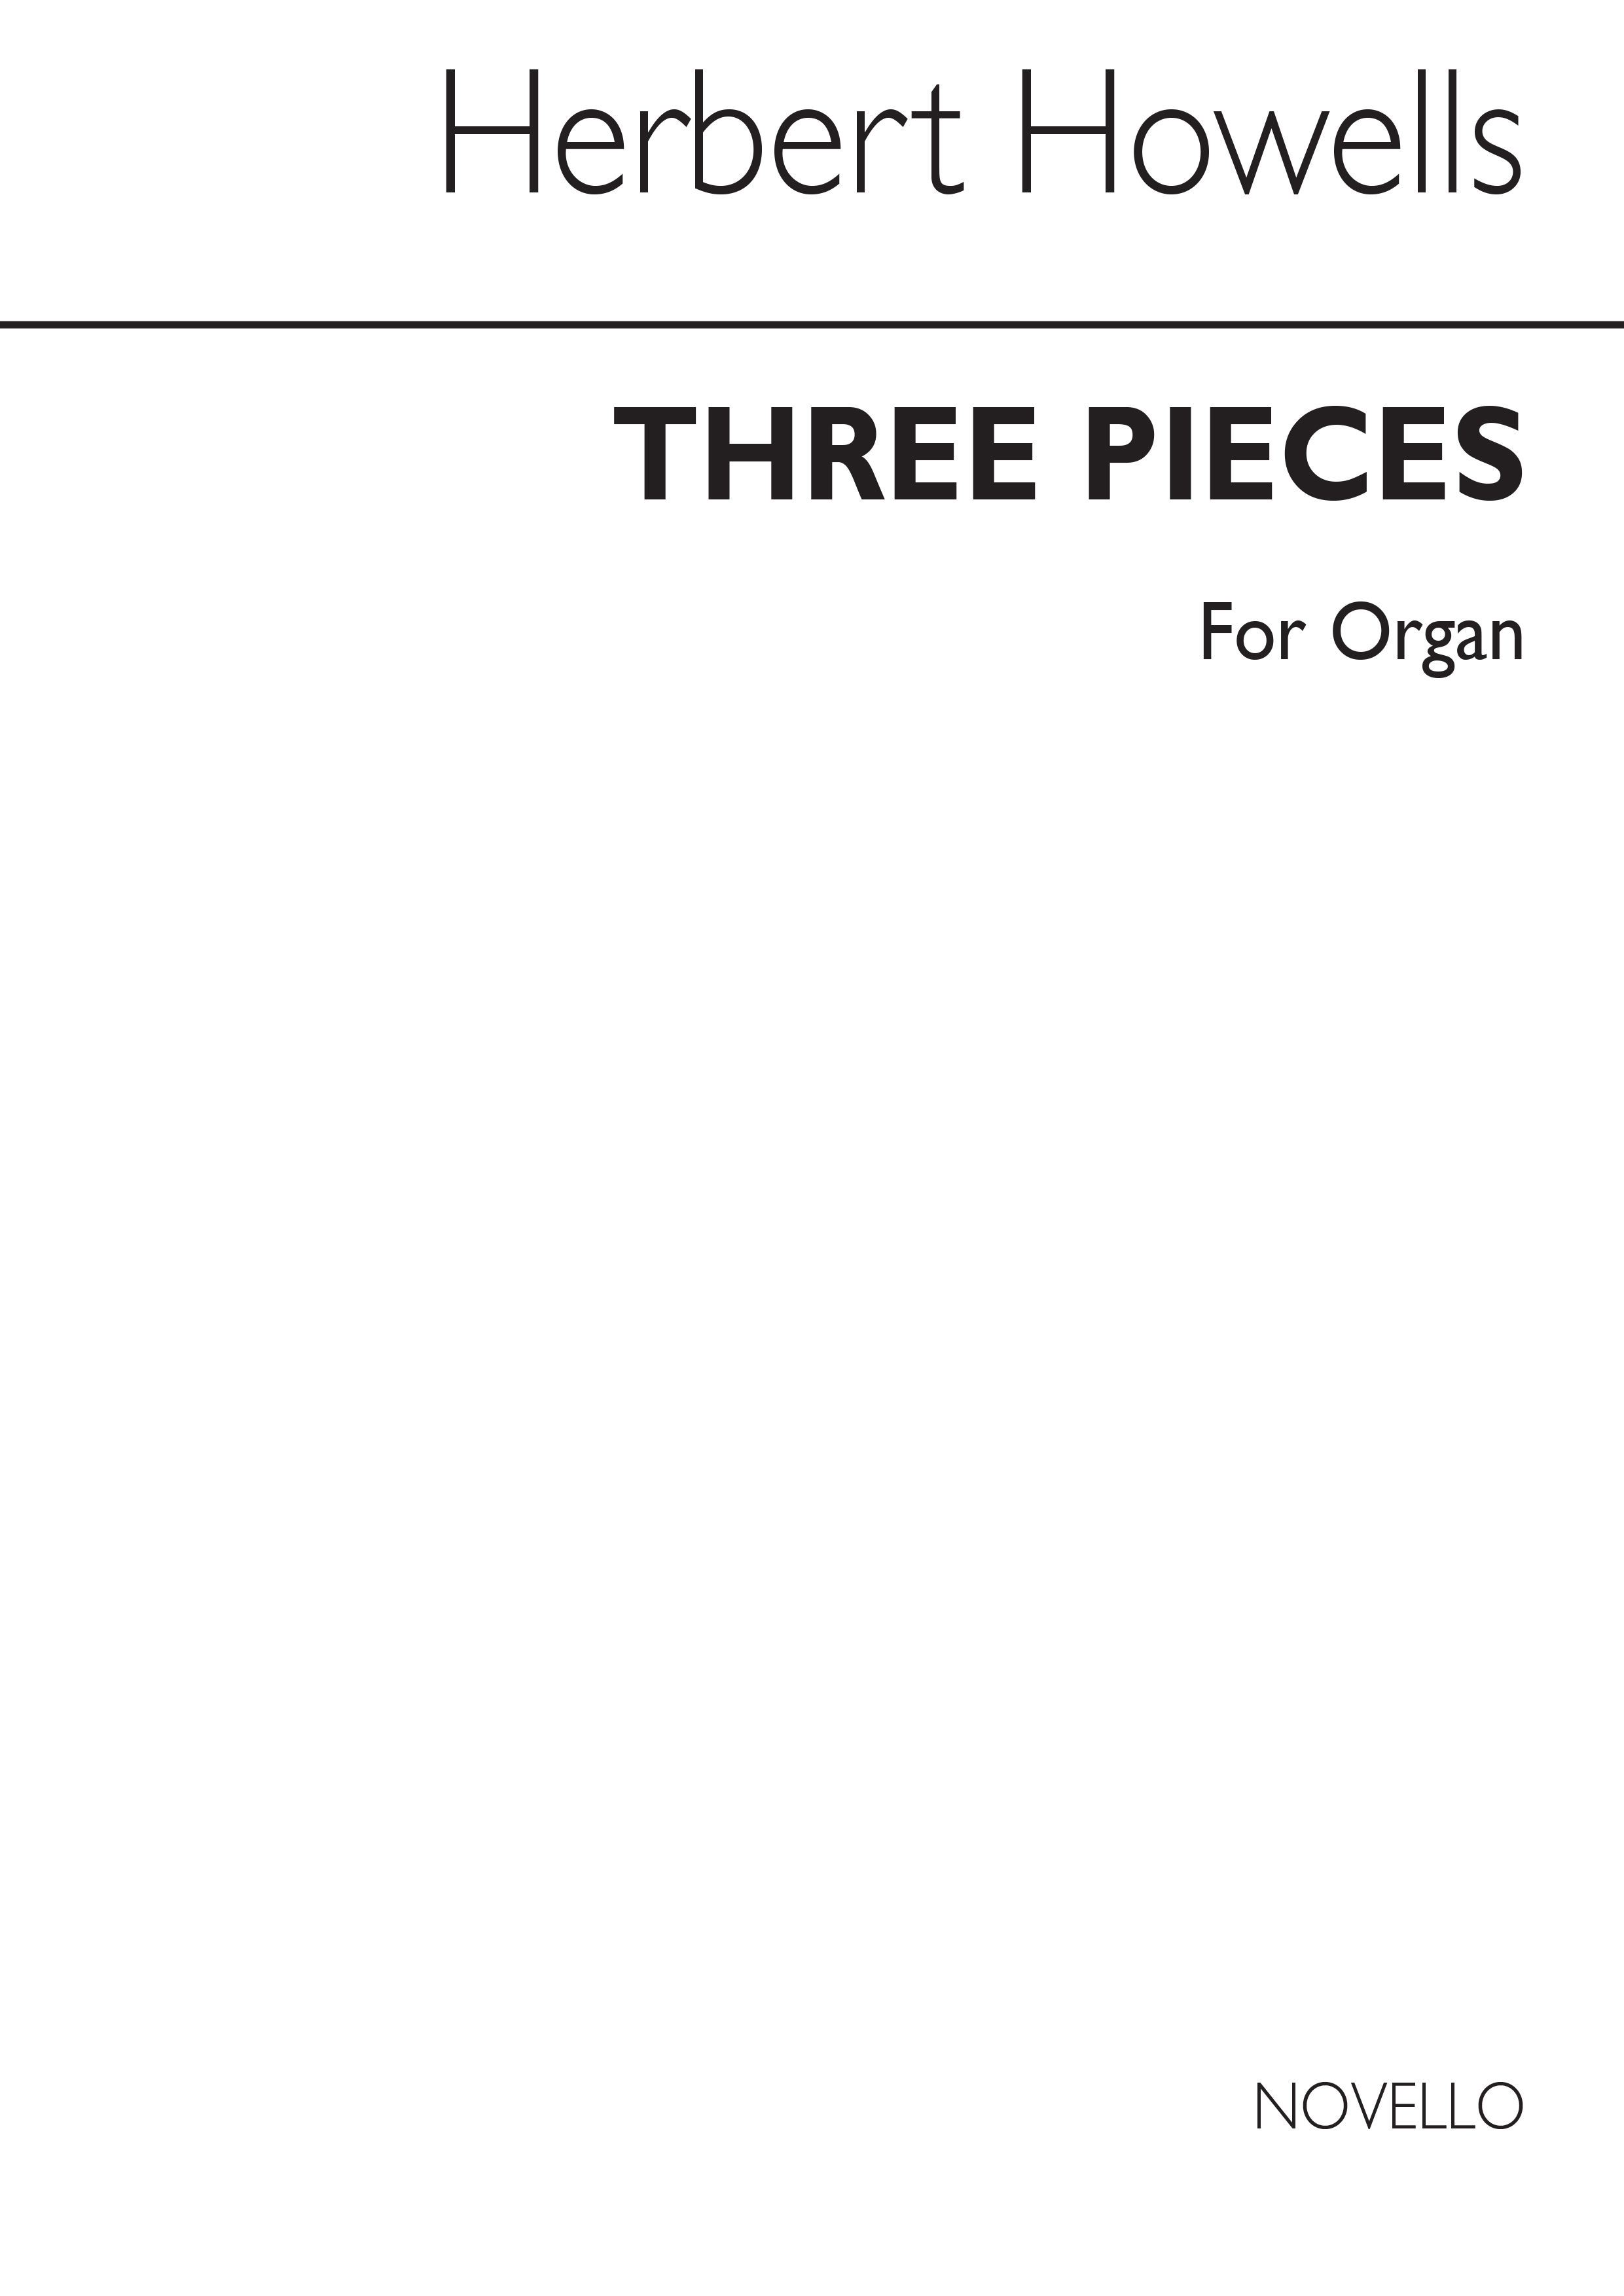 Herbert Howells: Three Pieces For Organ